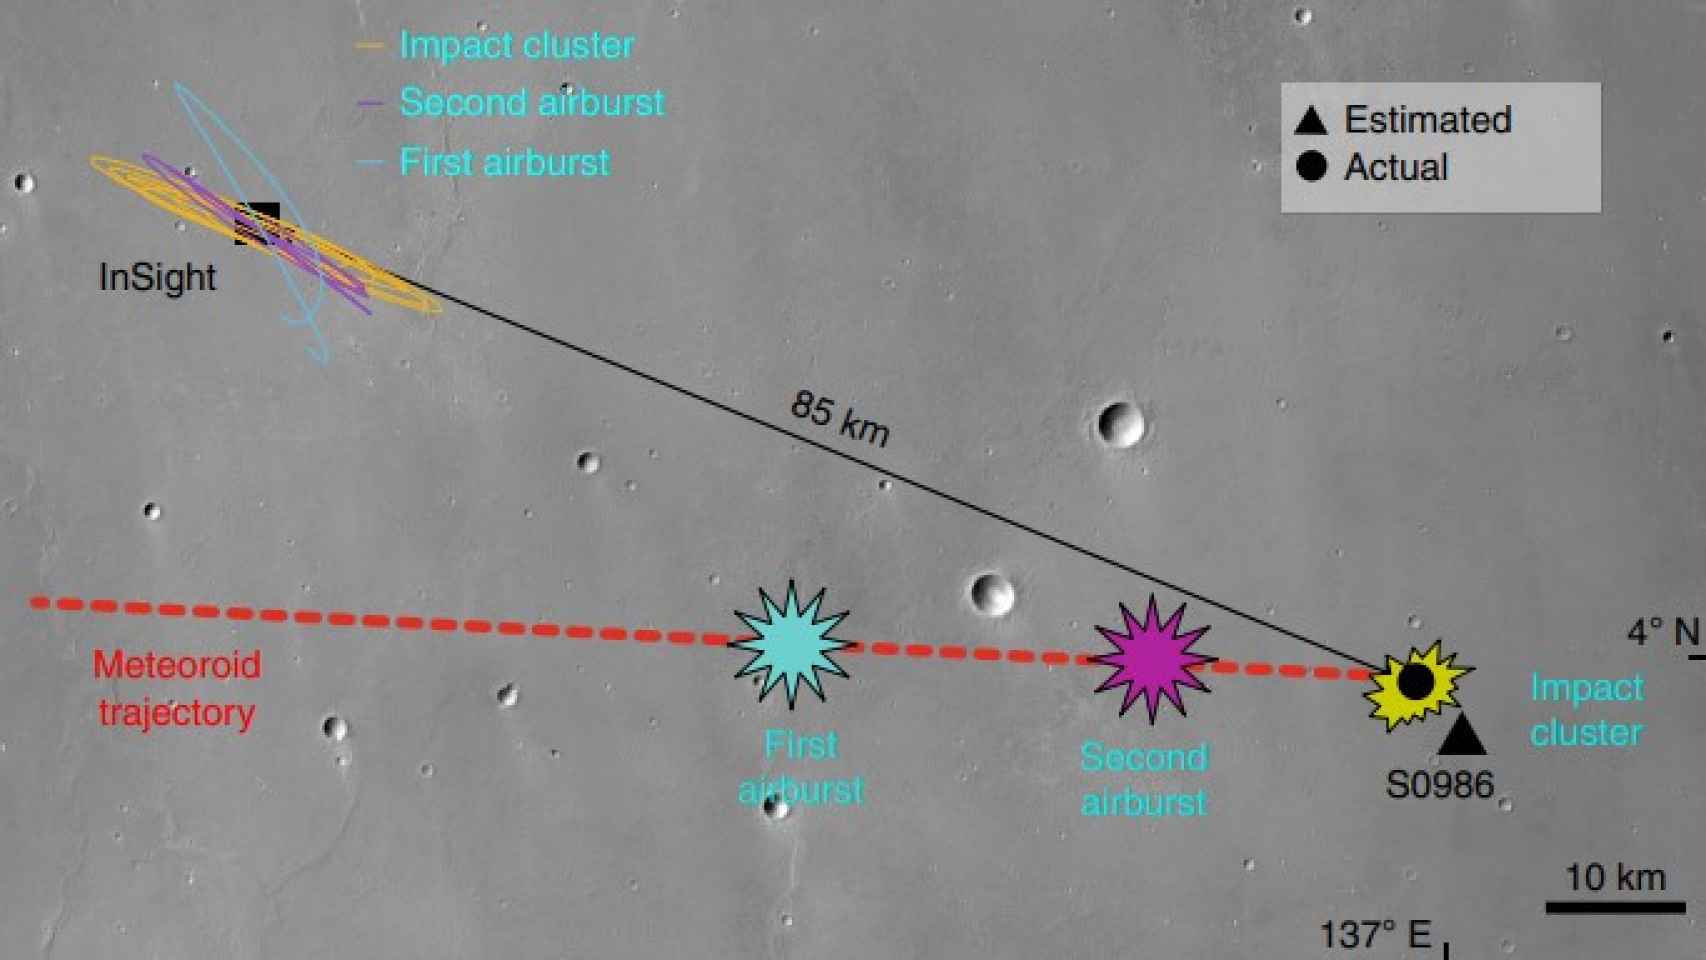 Trayectoria del meteorito y zonas de impacto con respecto a la posición de InSight.